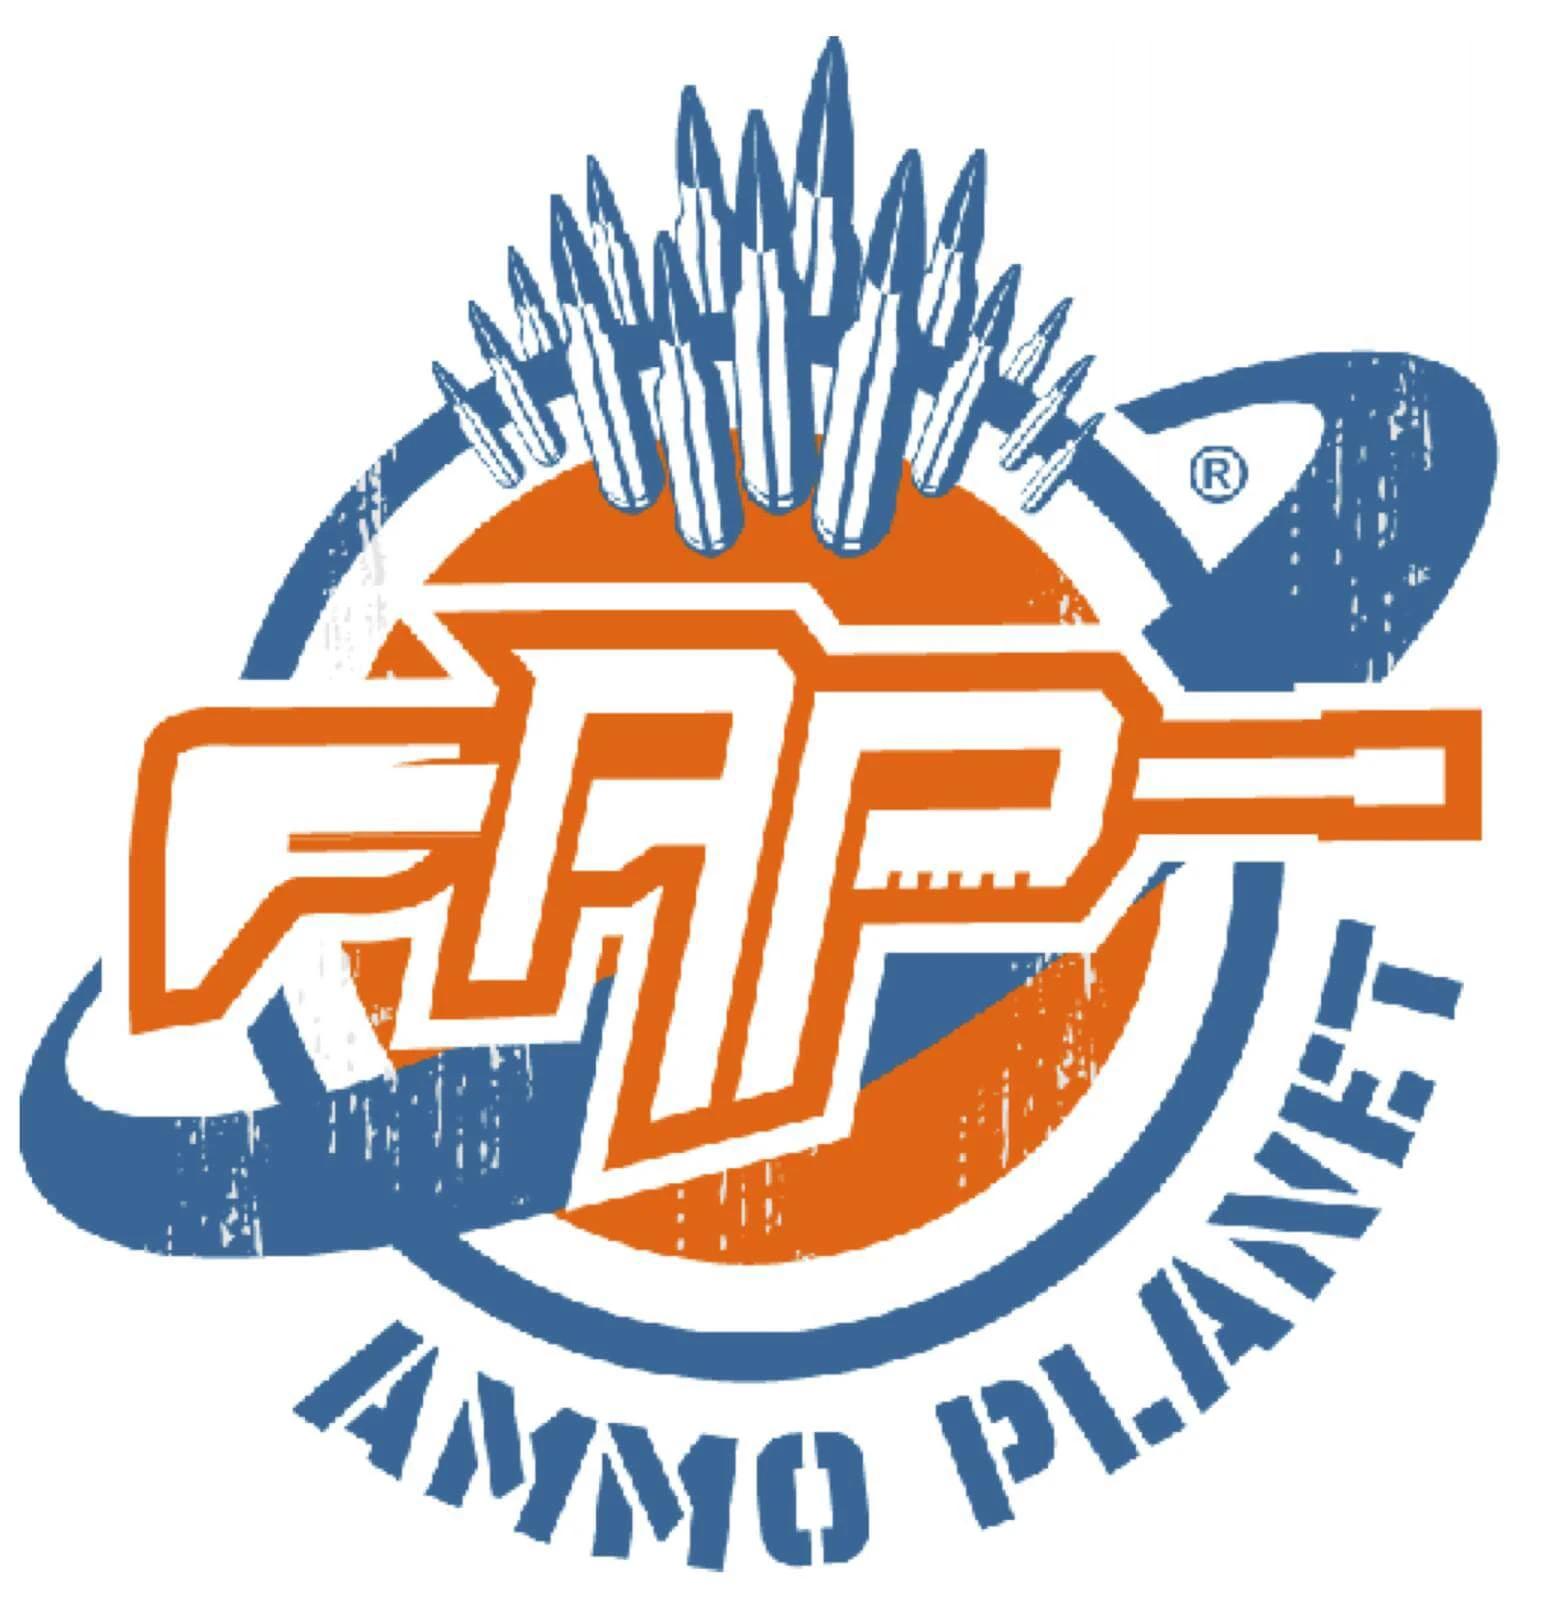 ammo-planet.com